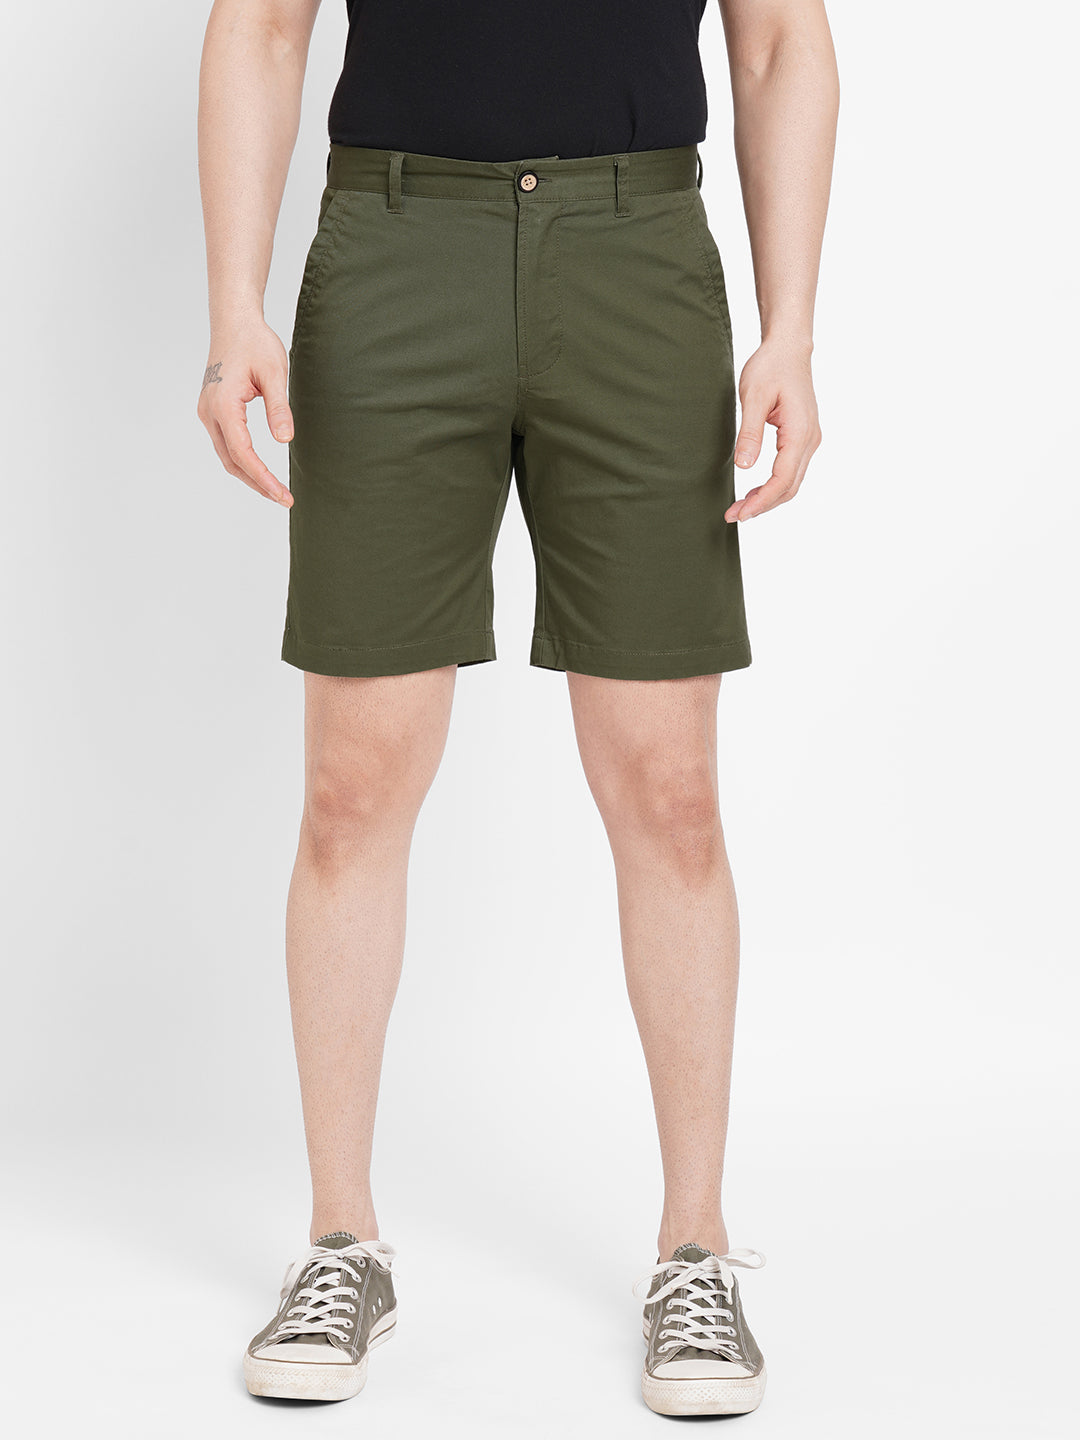 Men's Shorts (Cotton)